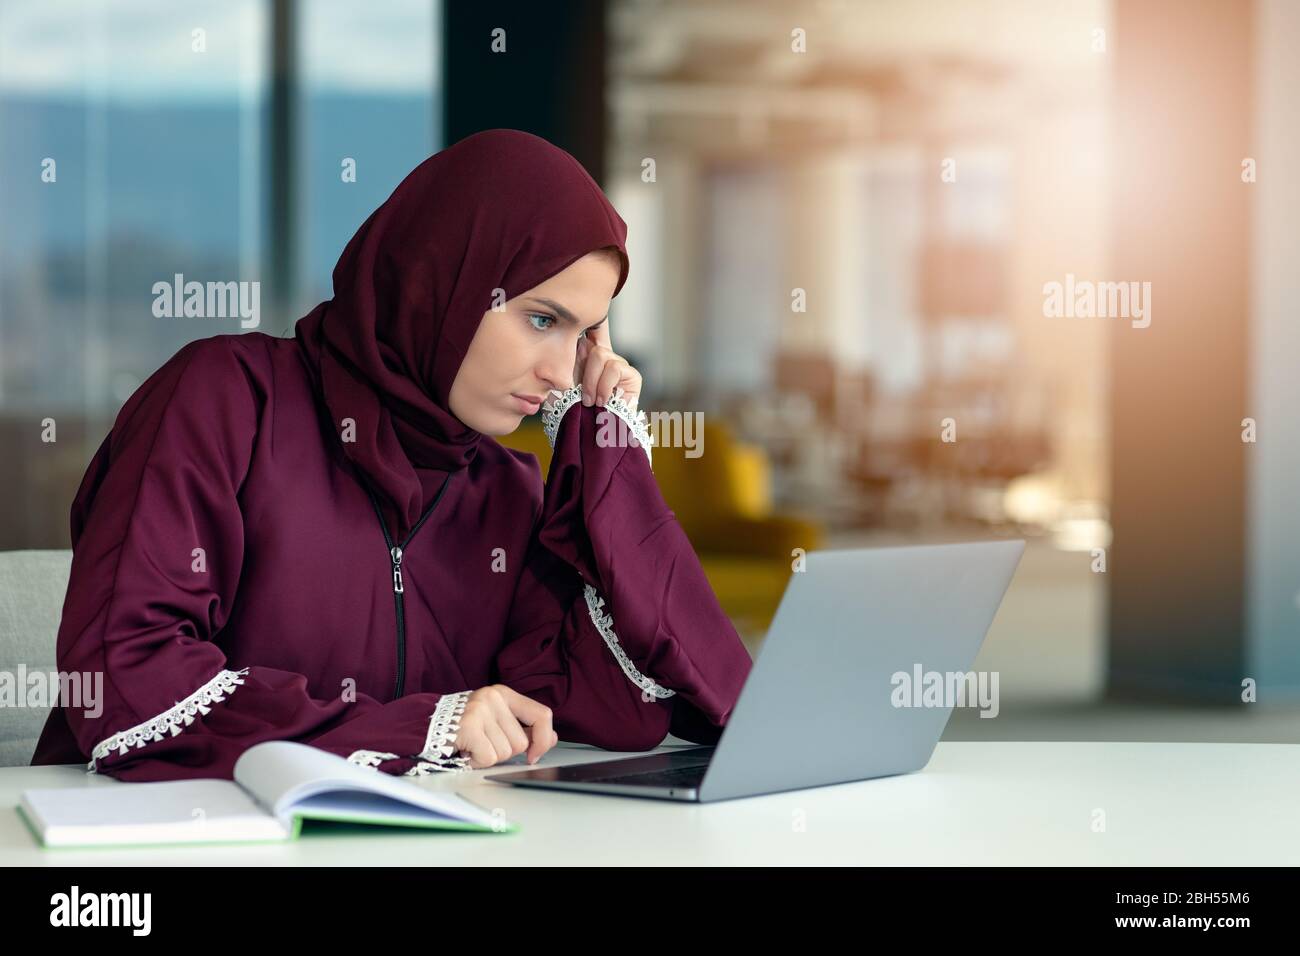 Femme d'affaires arabe pensive assise au bureau Banque D'Images